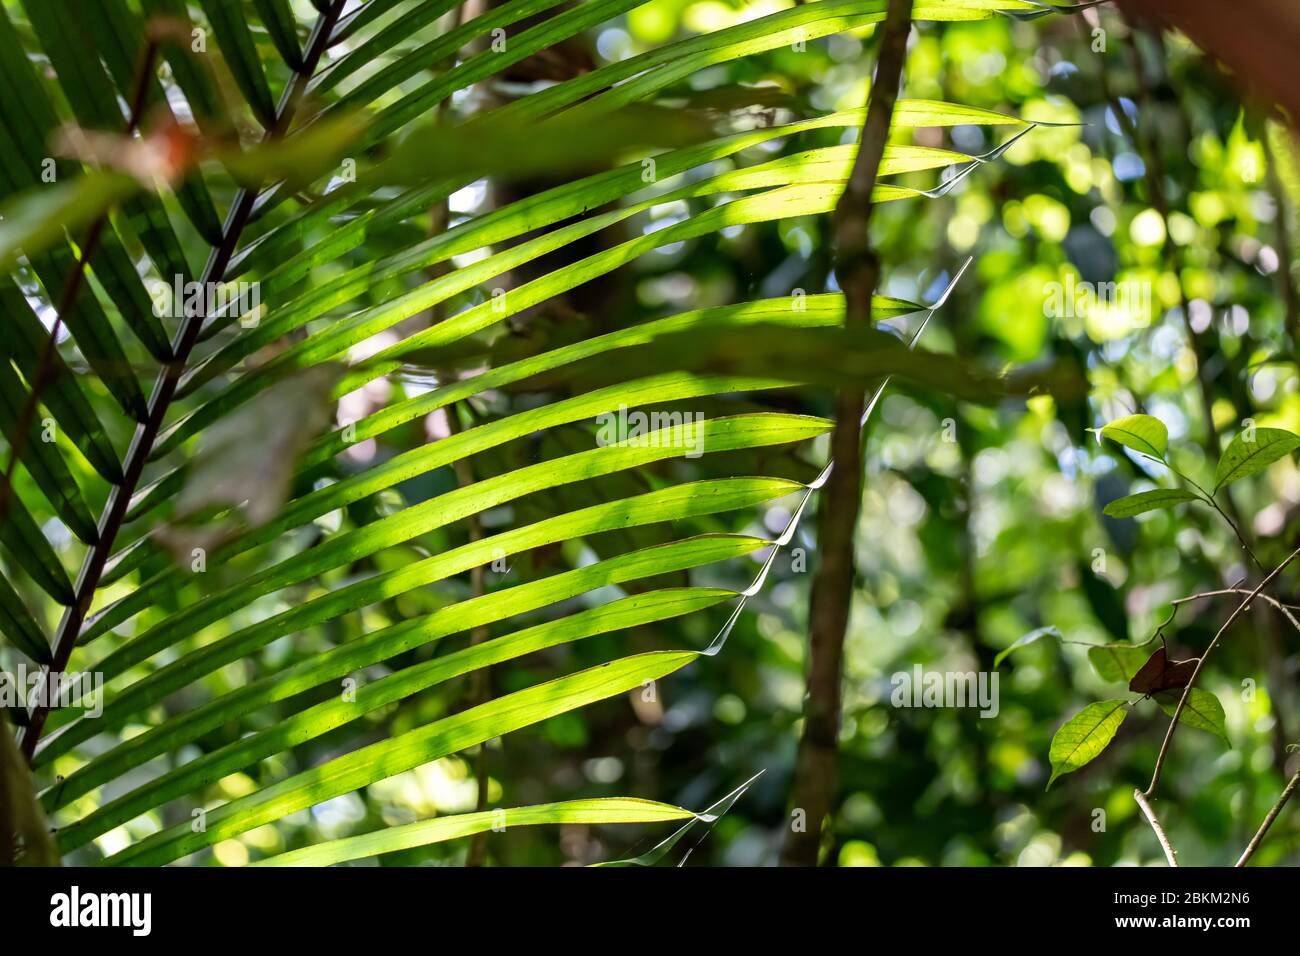 Paysage de la jungle péruvienne d'Amazonie Banque D'Images